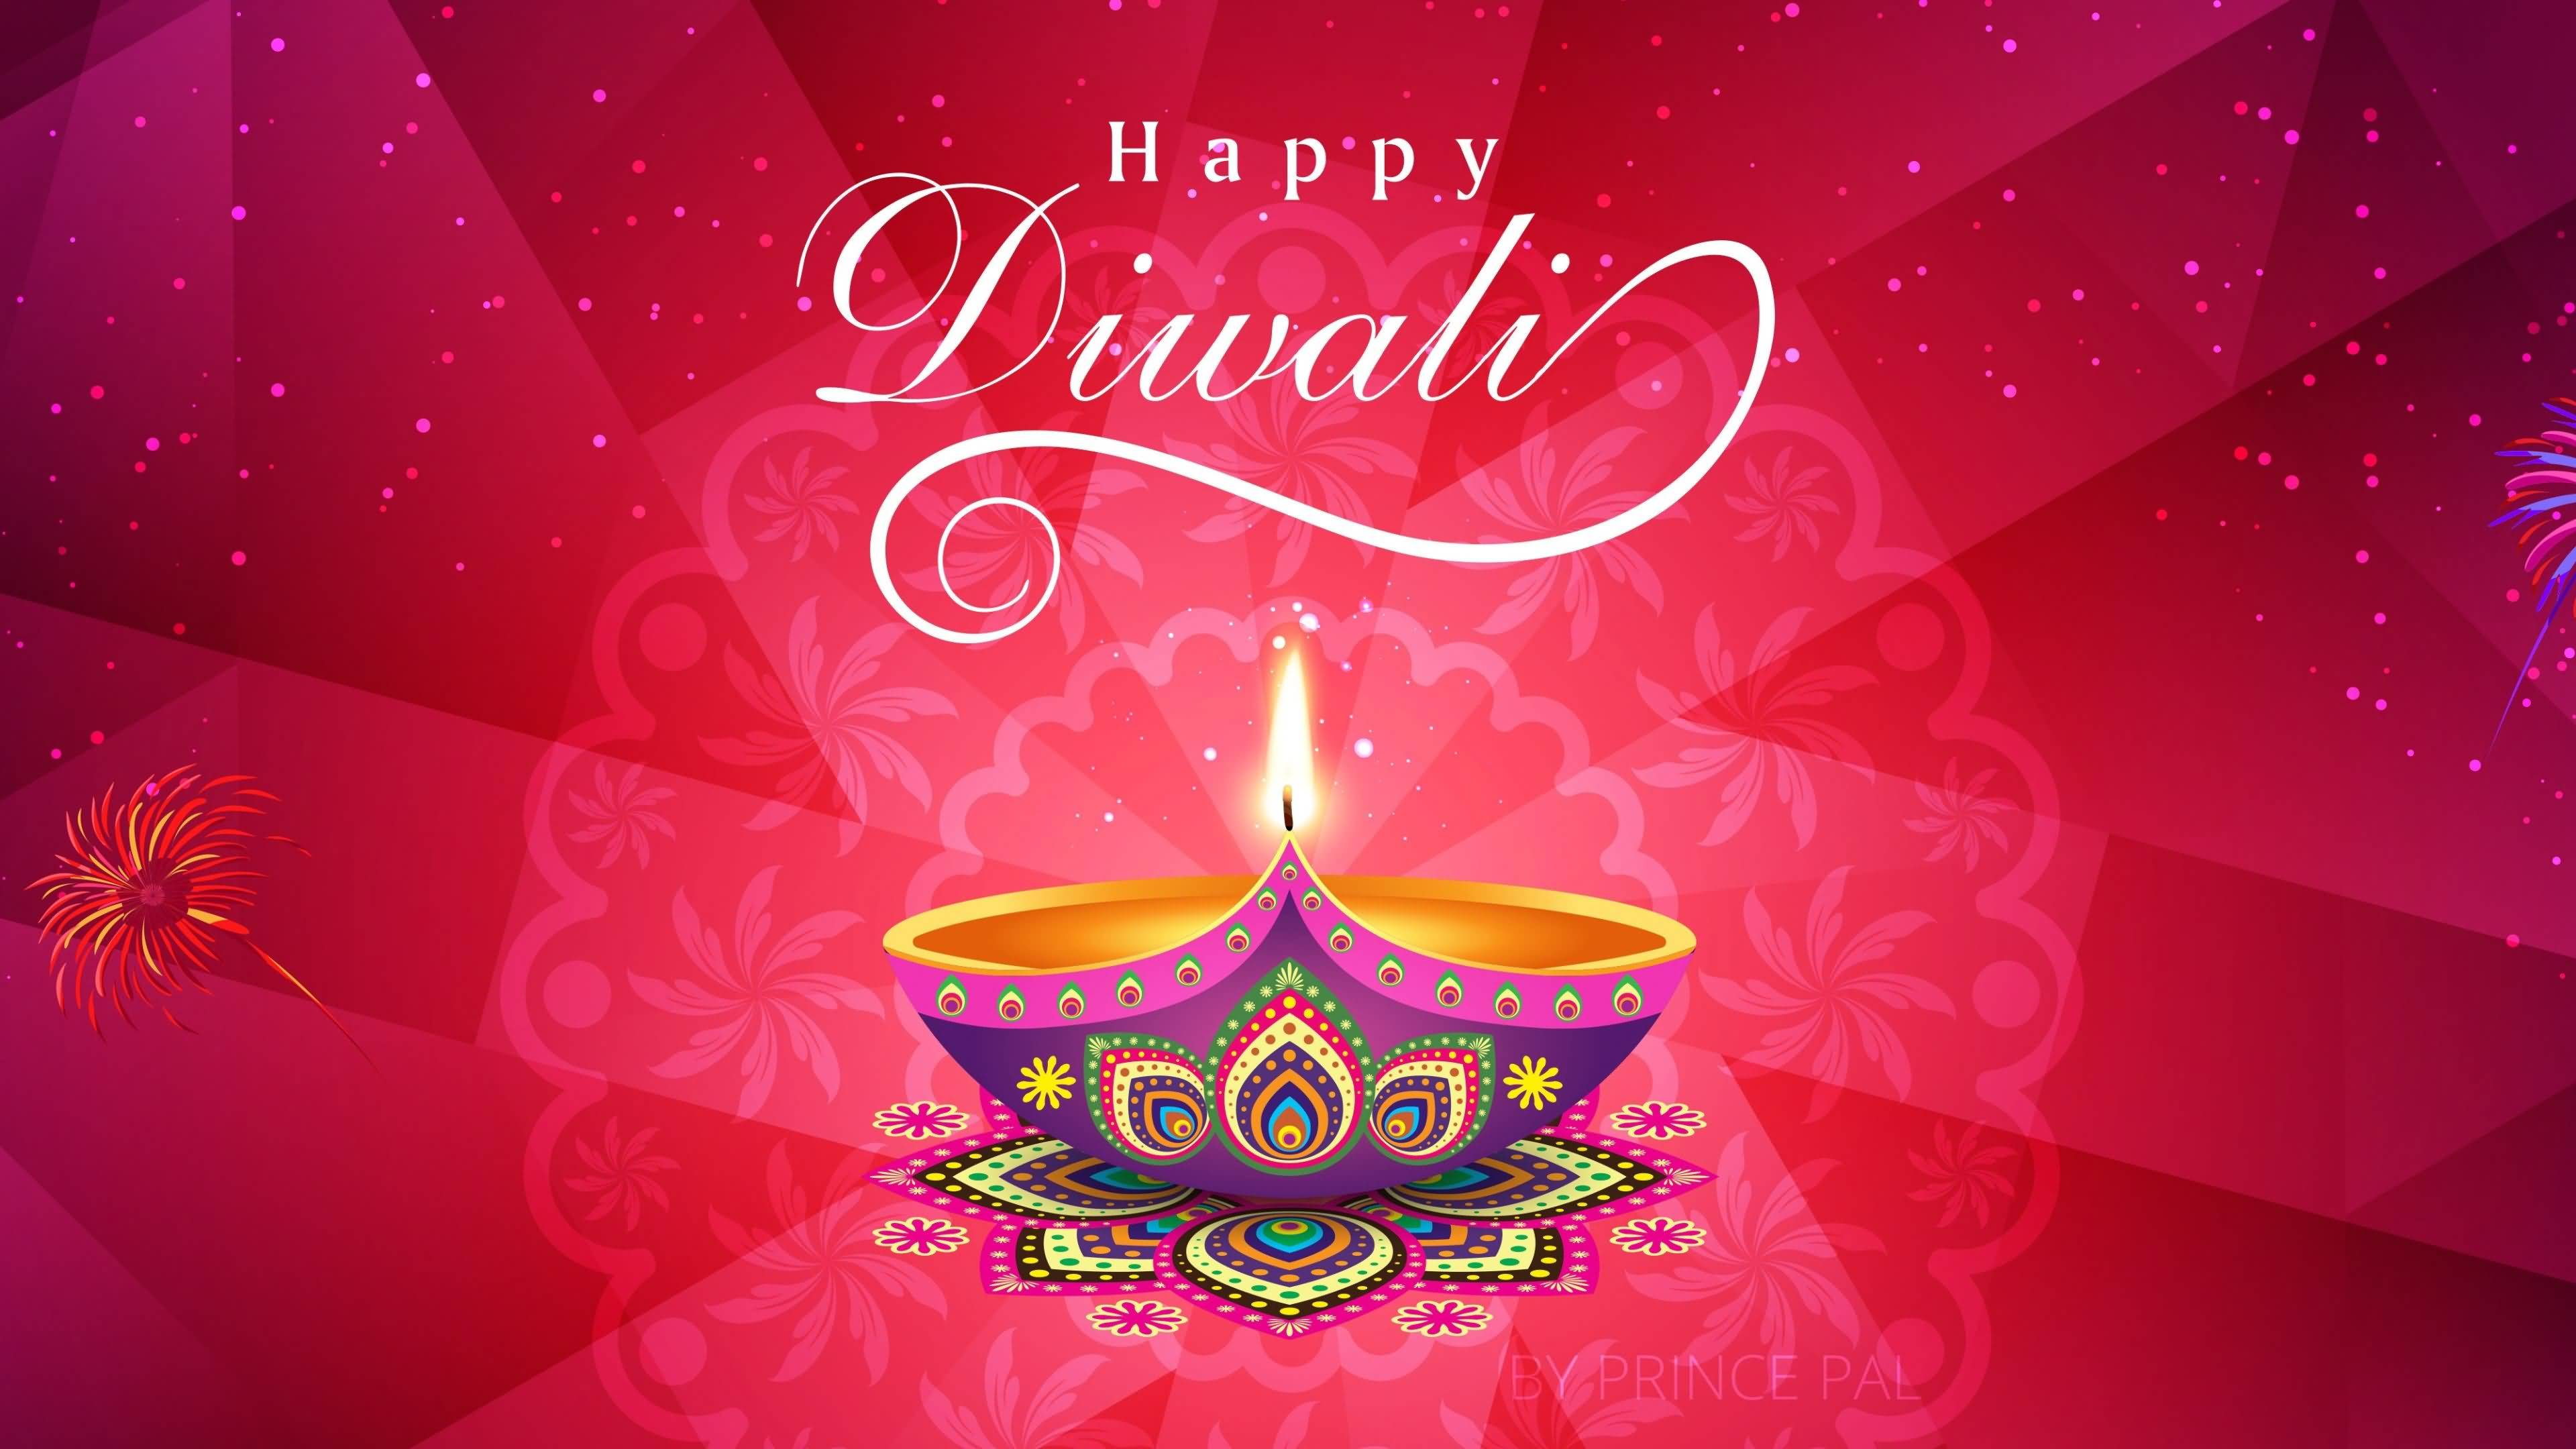 Happy Diwali With Diya Diwali Greetings